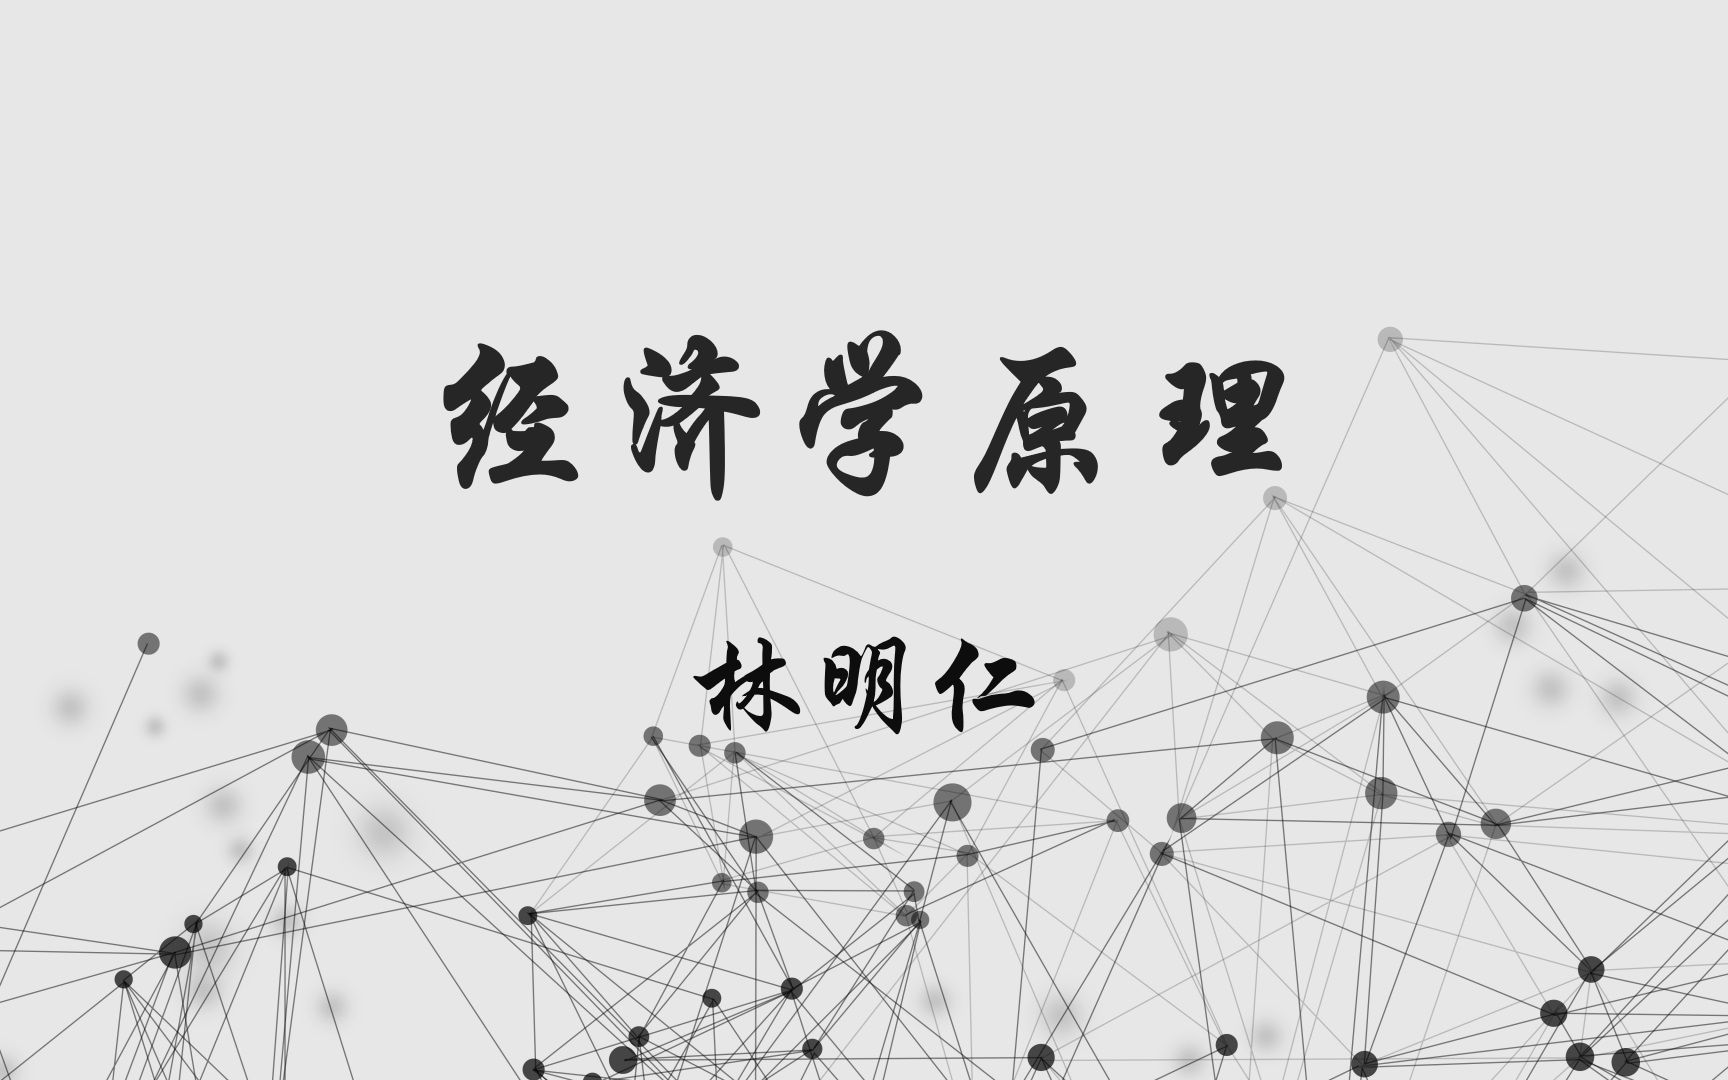 台湾大学公开课《经济学原理》